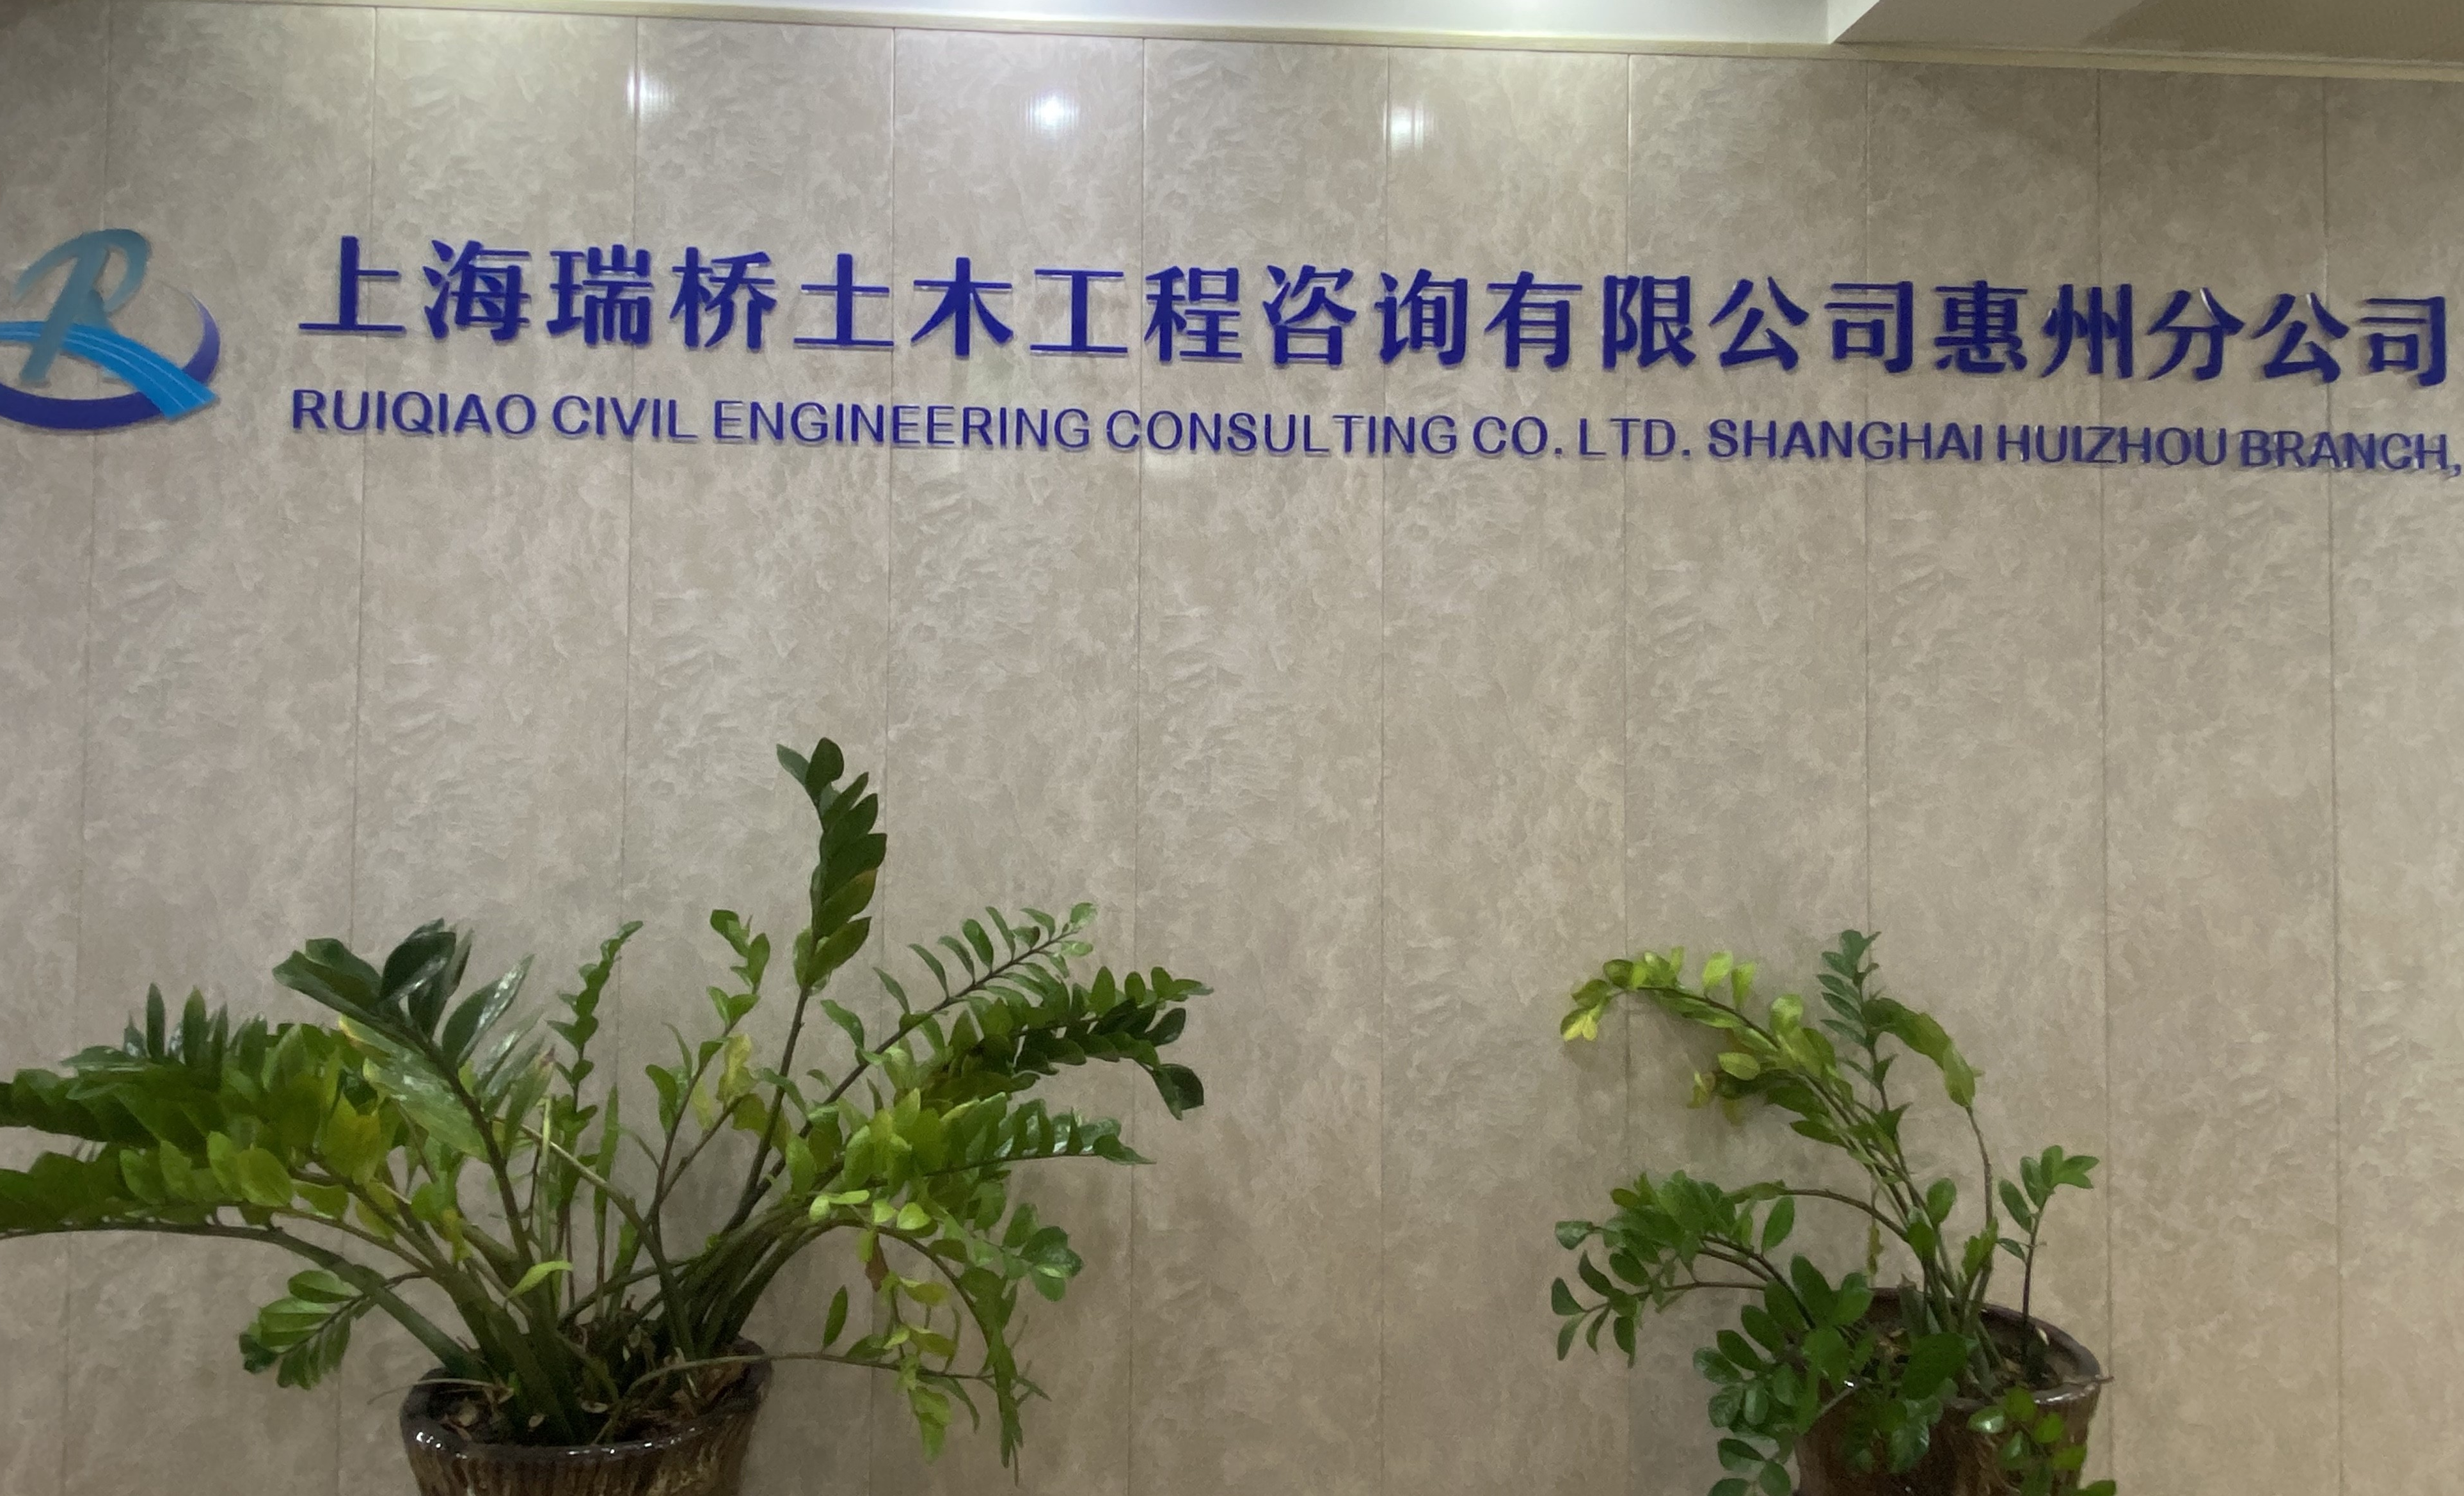 上海瑞桥土木工程咨询有限公司惠州分公司最新招聘信息